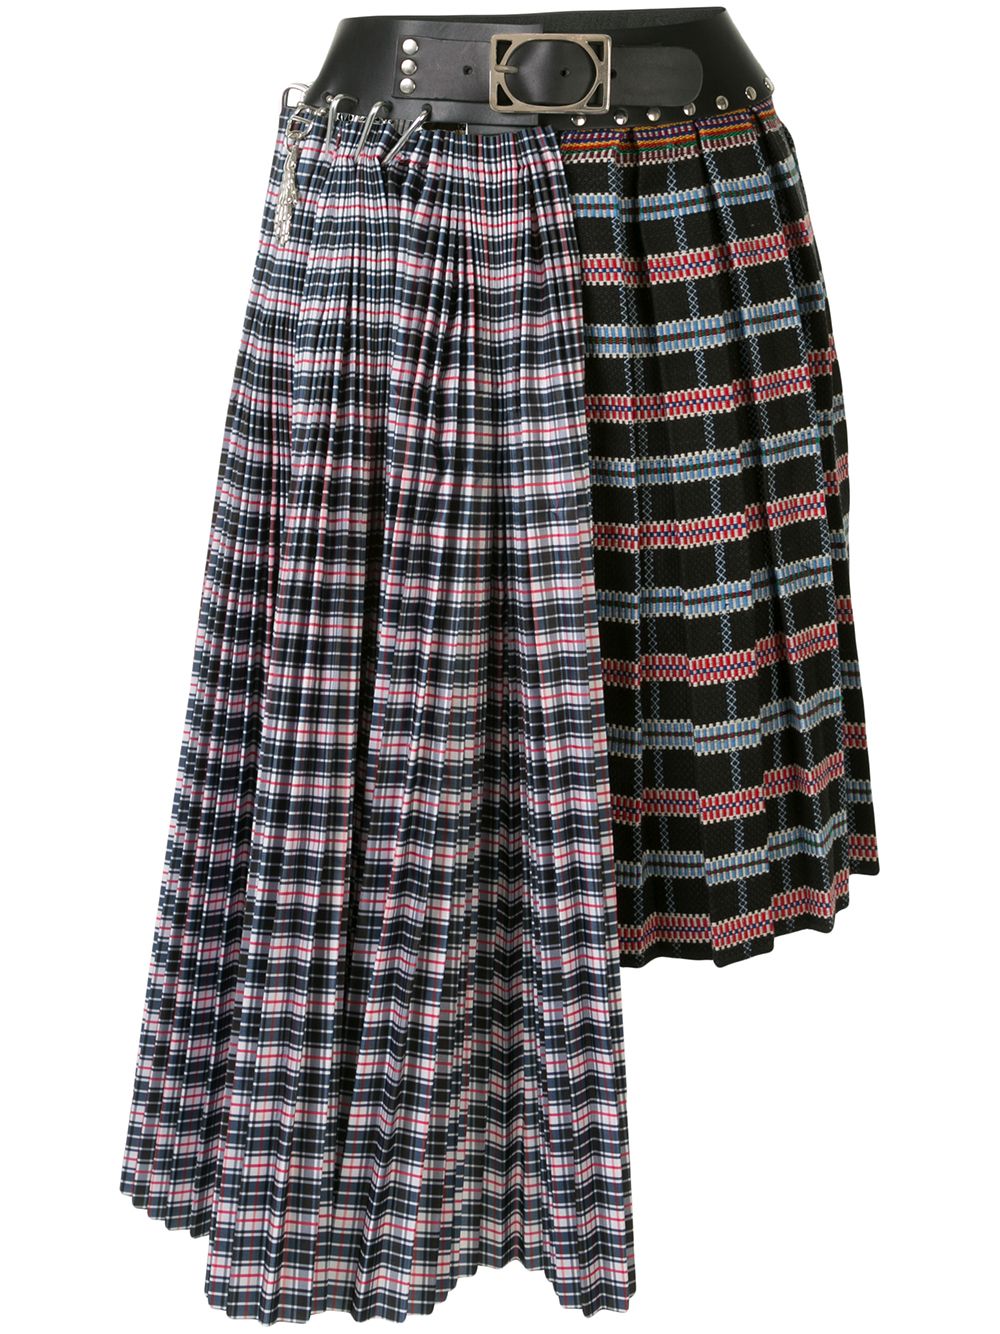 фото Chopova lowena полосатая юбка асимметричного кроя